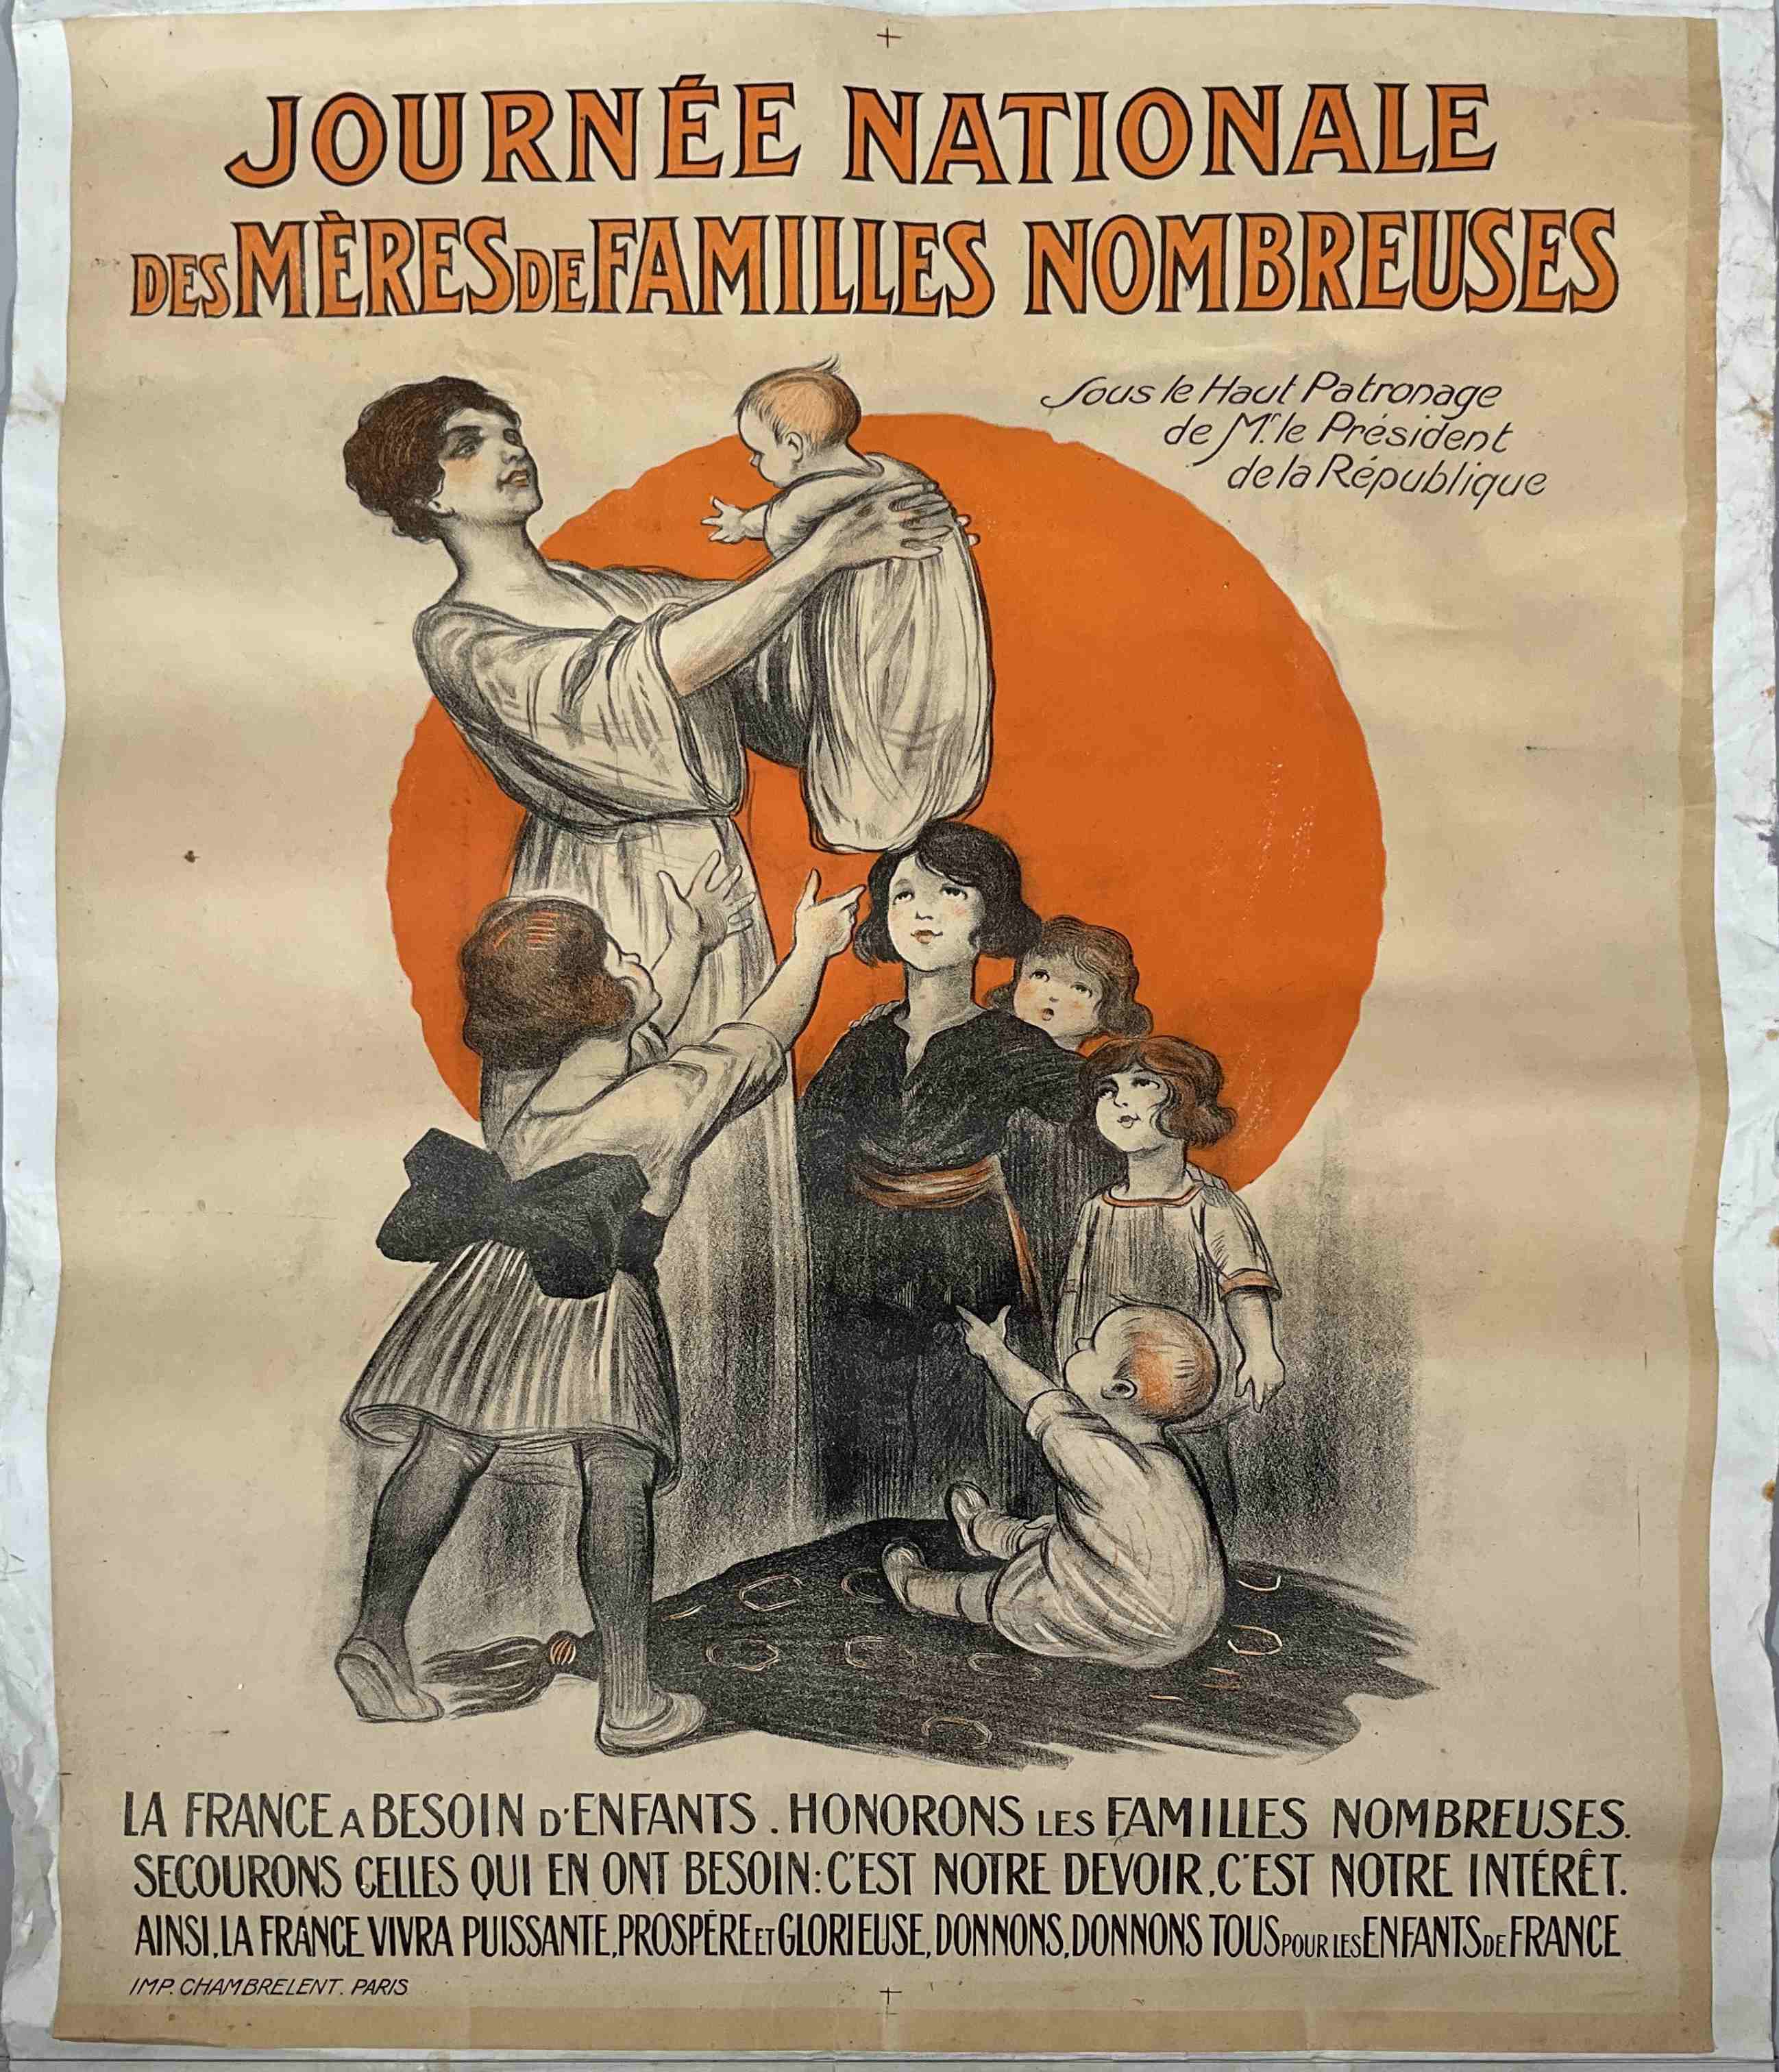 Ch. MOCRESCET.
"Journée Nationale des Mères de Familles Nombreuses".
Affiche imprimée par...